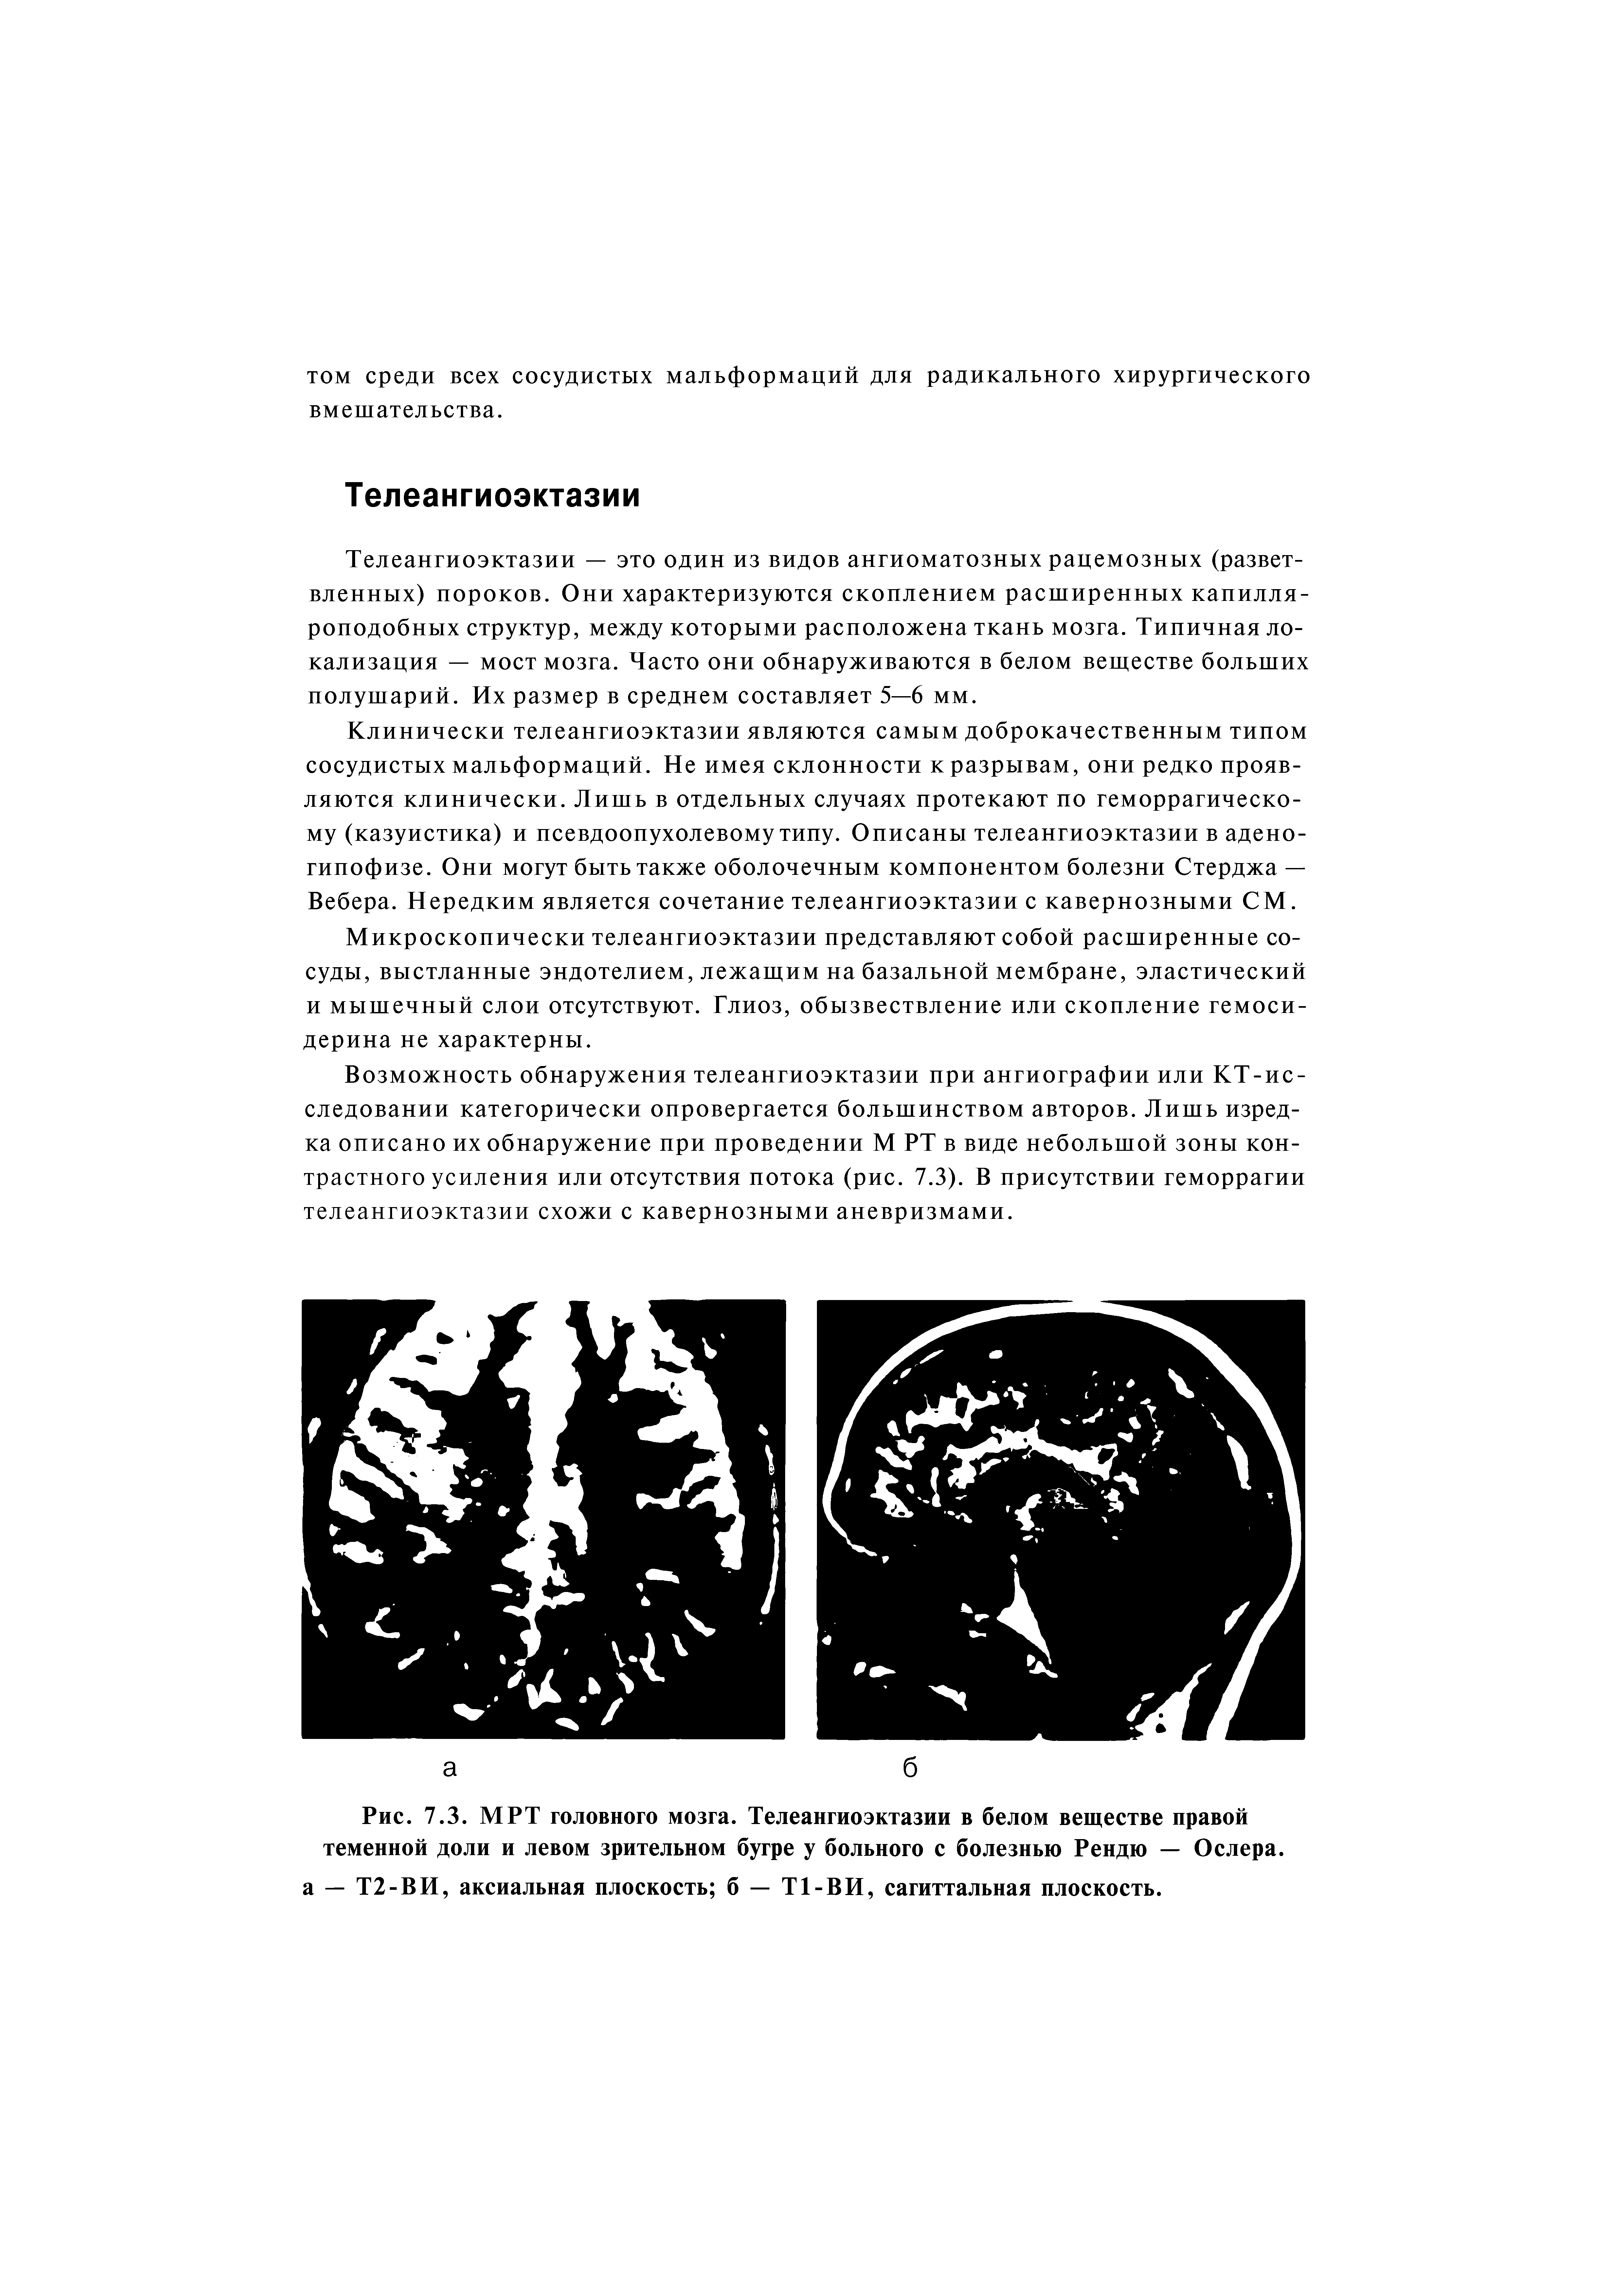 Рис. 7.3. МРТ головного мозга. Телеангиоэктазии в белом веществе правой теменной доли и левом зрительном бугре у больного с болезнью Рендю — Ослера.